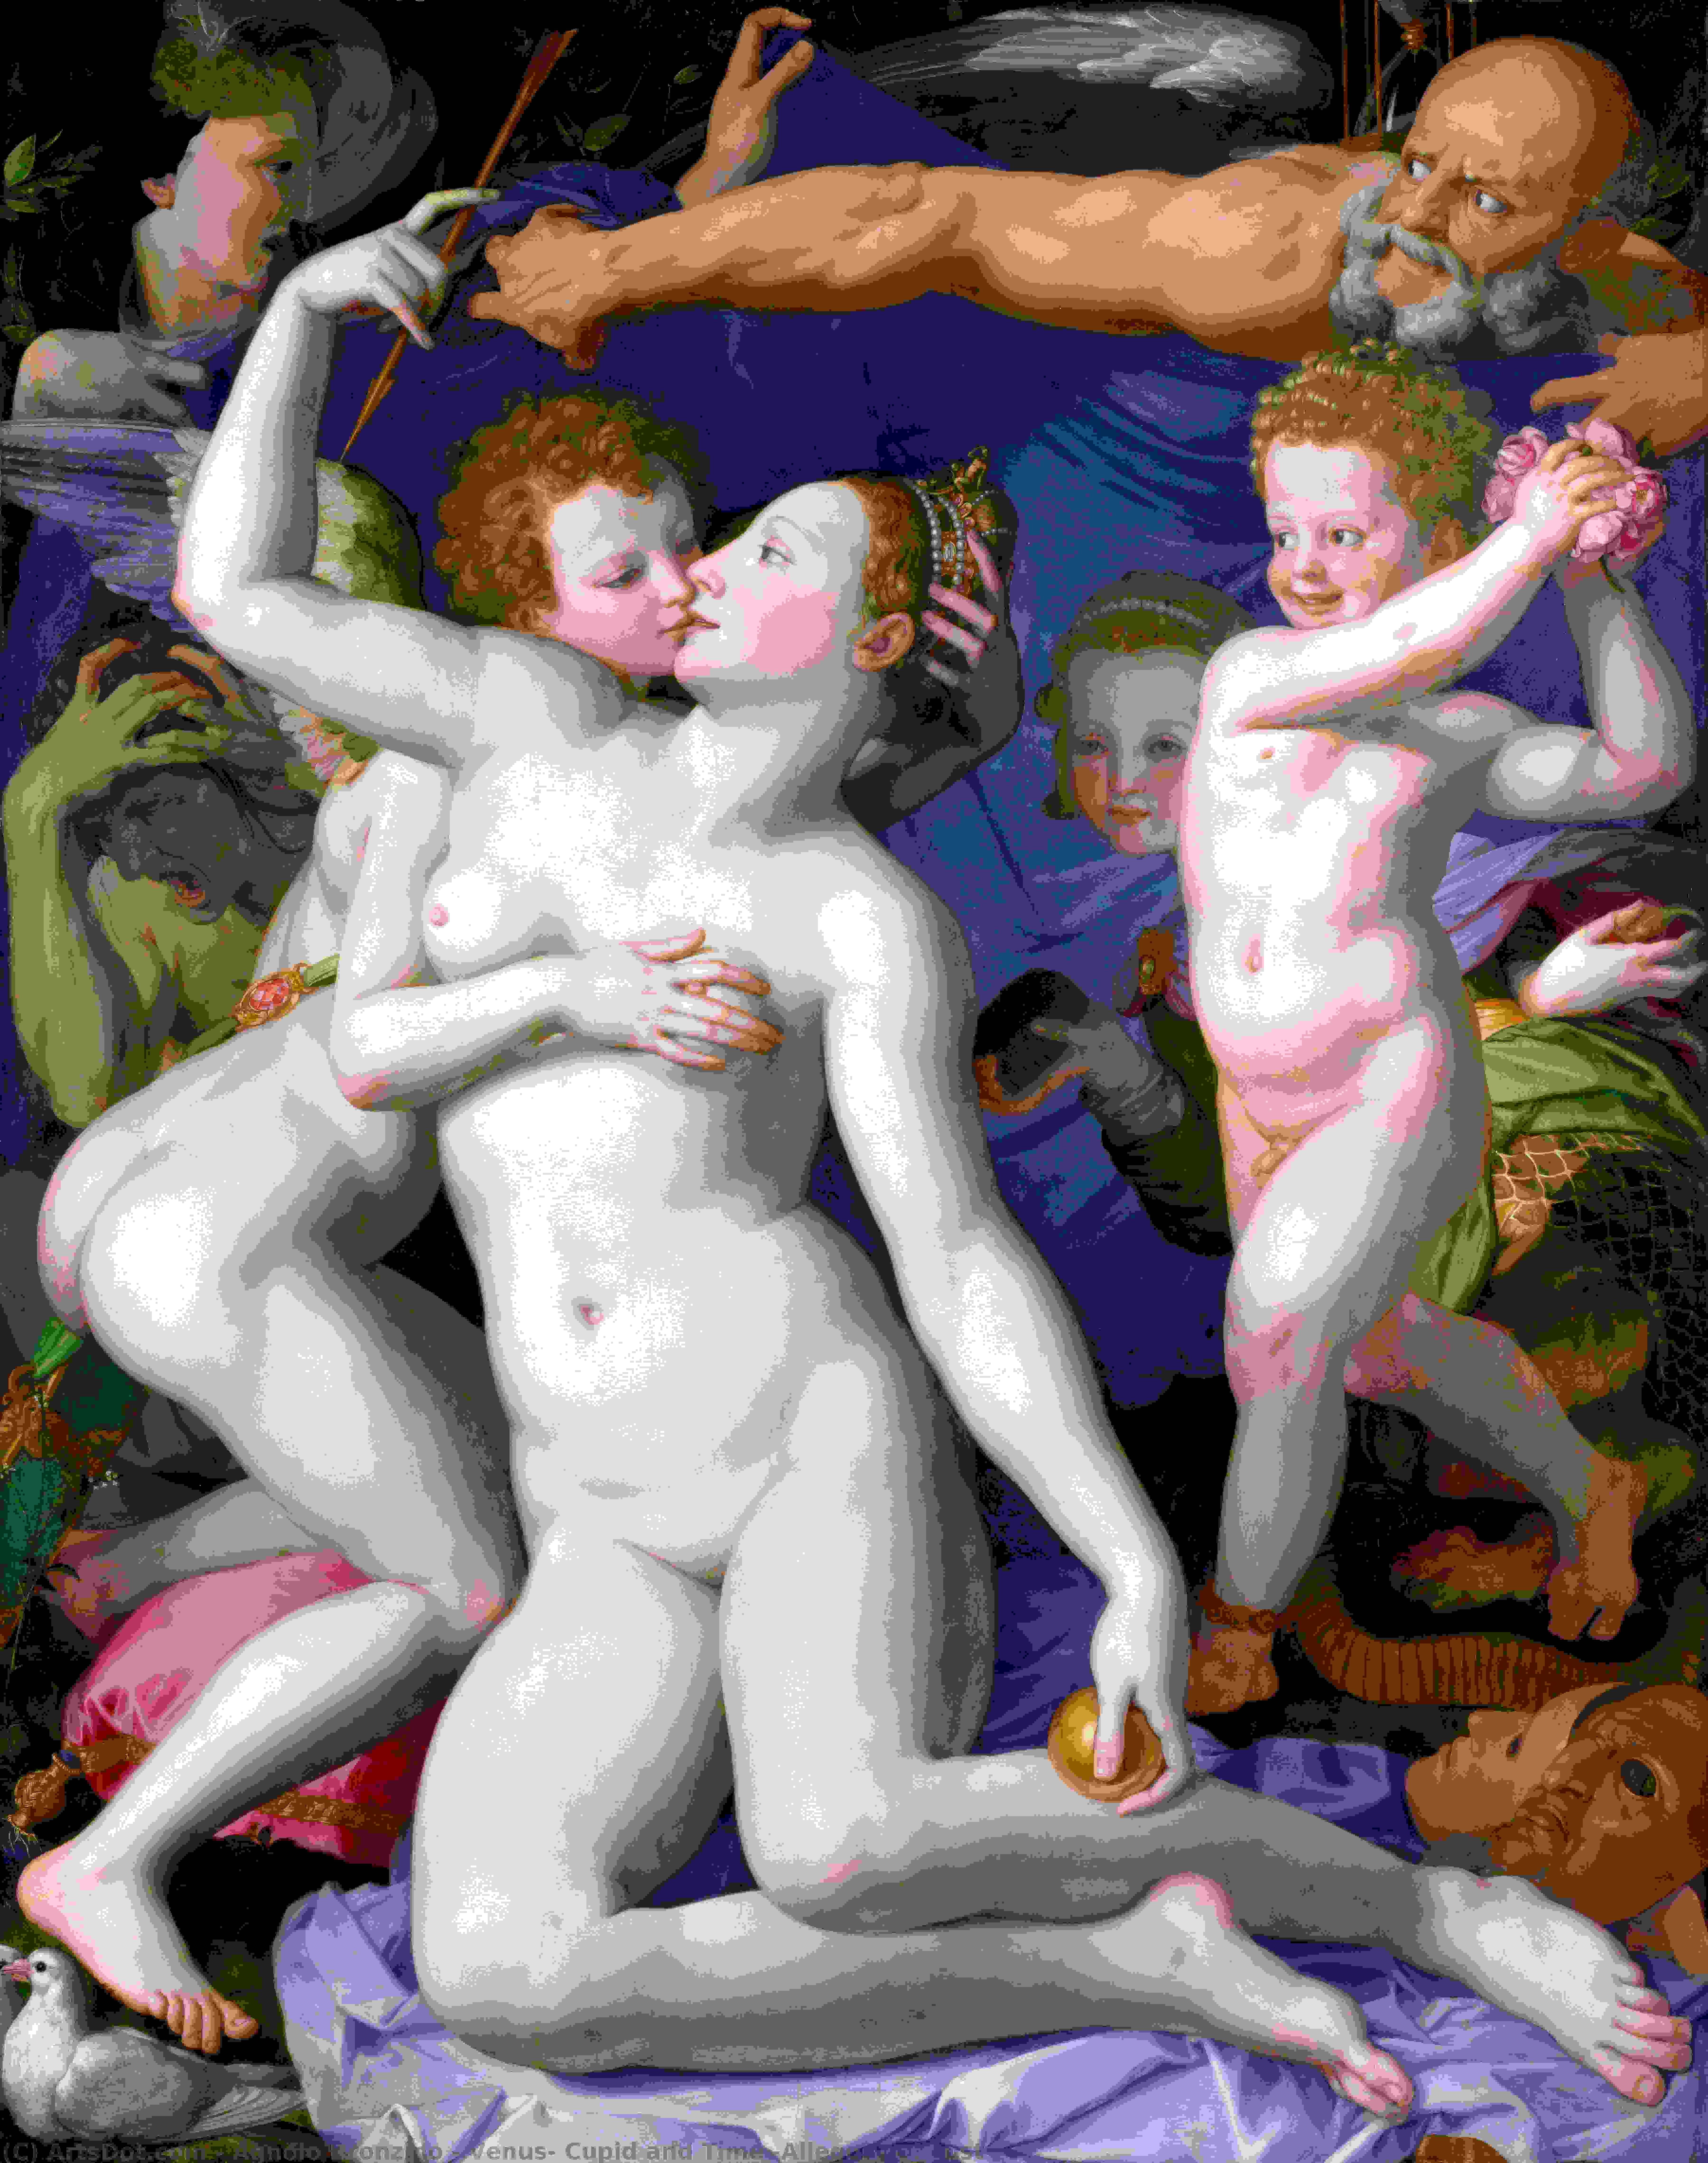 Acheter Reproductions D'art De Musée Vénus, Cupidon et Temps (Allégorie de Lust), 1540 de Agnolo Bronzino (1503-1572, Italy) | ArtsDot.com